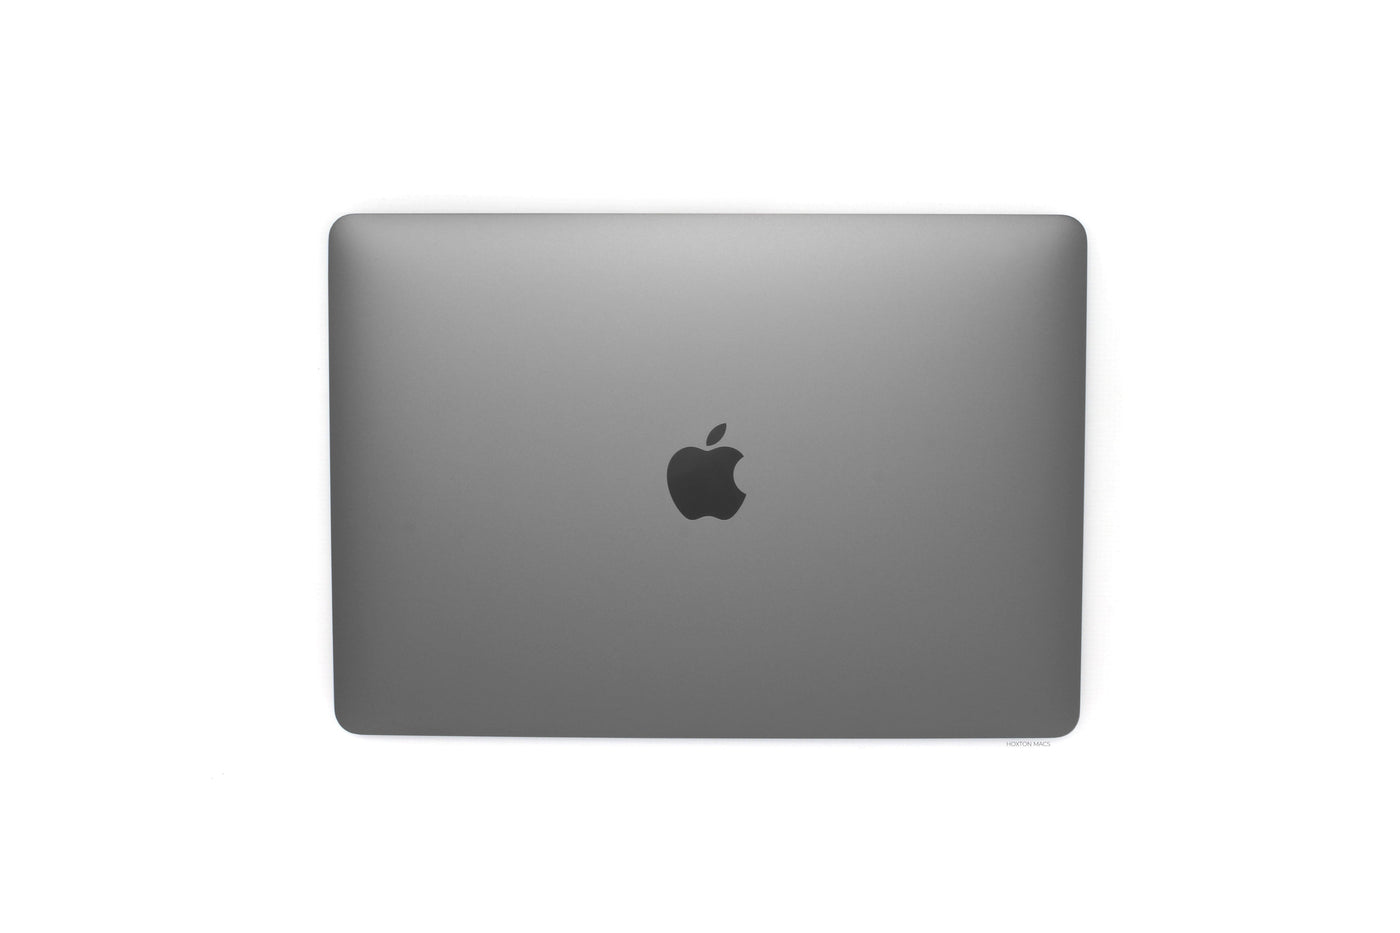 Apple MacBook Air 13-inch MacBook Air 13-inch Core i3 1.1GHz (Space Grey, 2020) - Fair